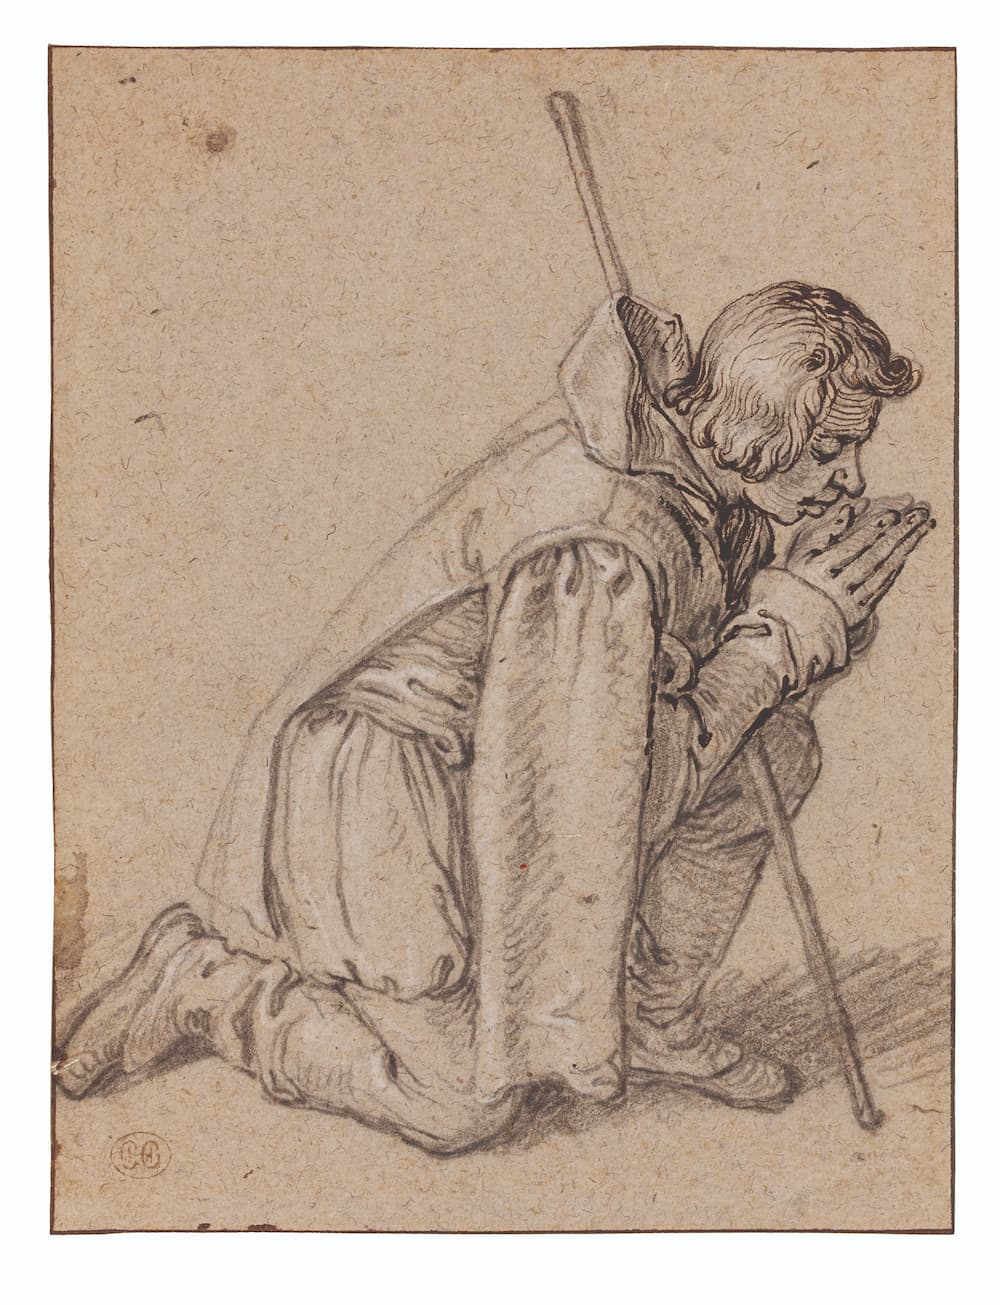 Haboldt • Pictura : Jacques DE GHEYN II, Un Berger Agenouillé en Prière, c. 1603